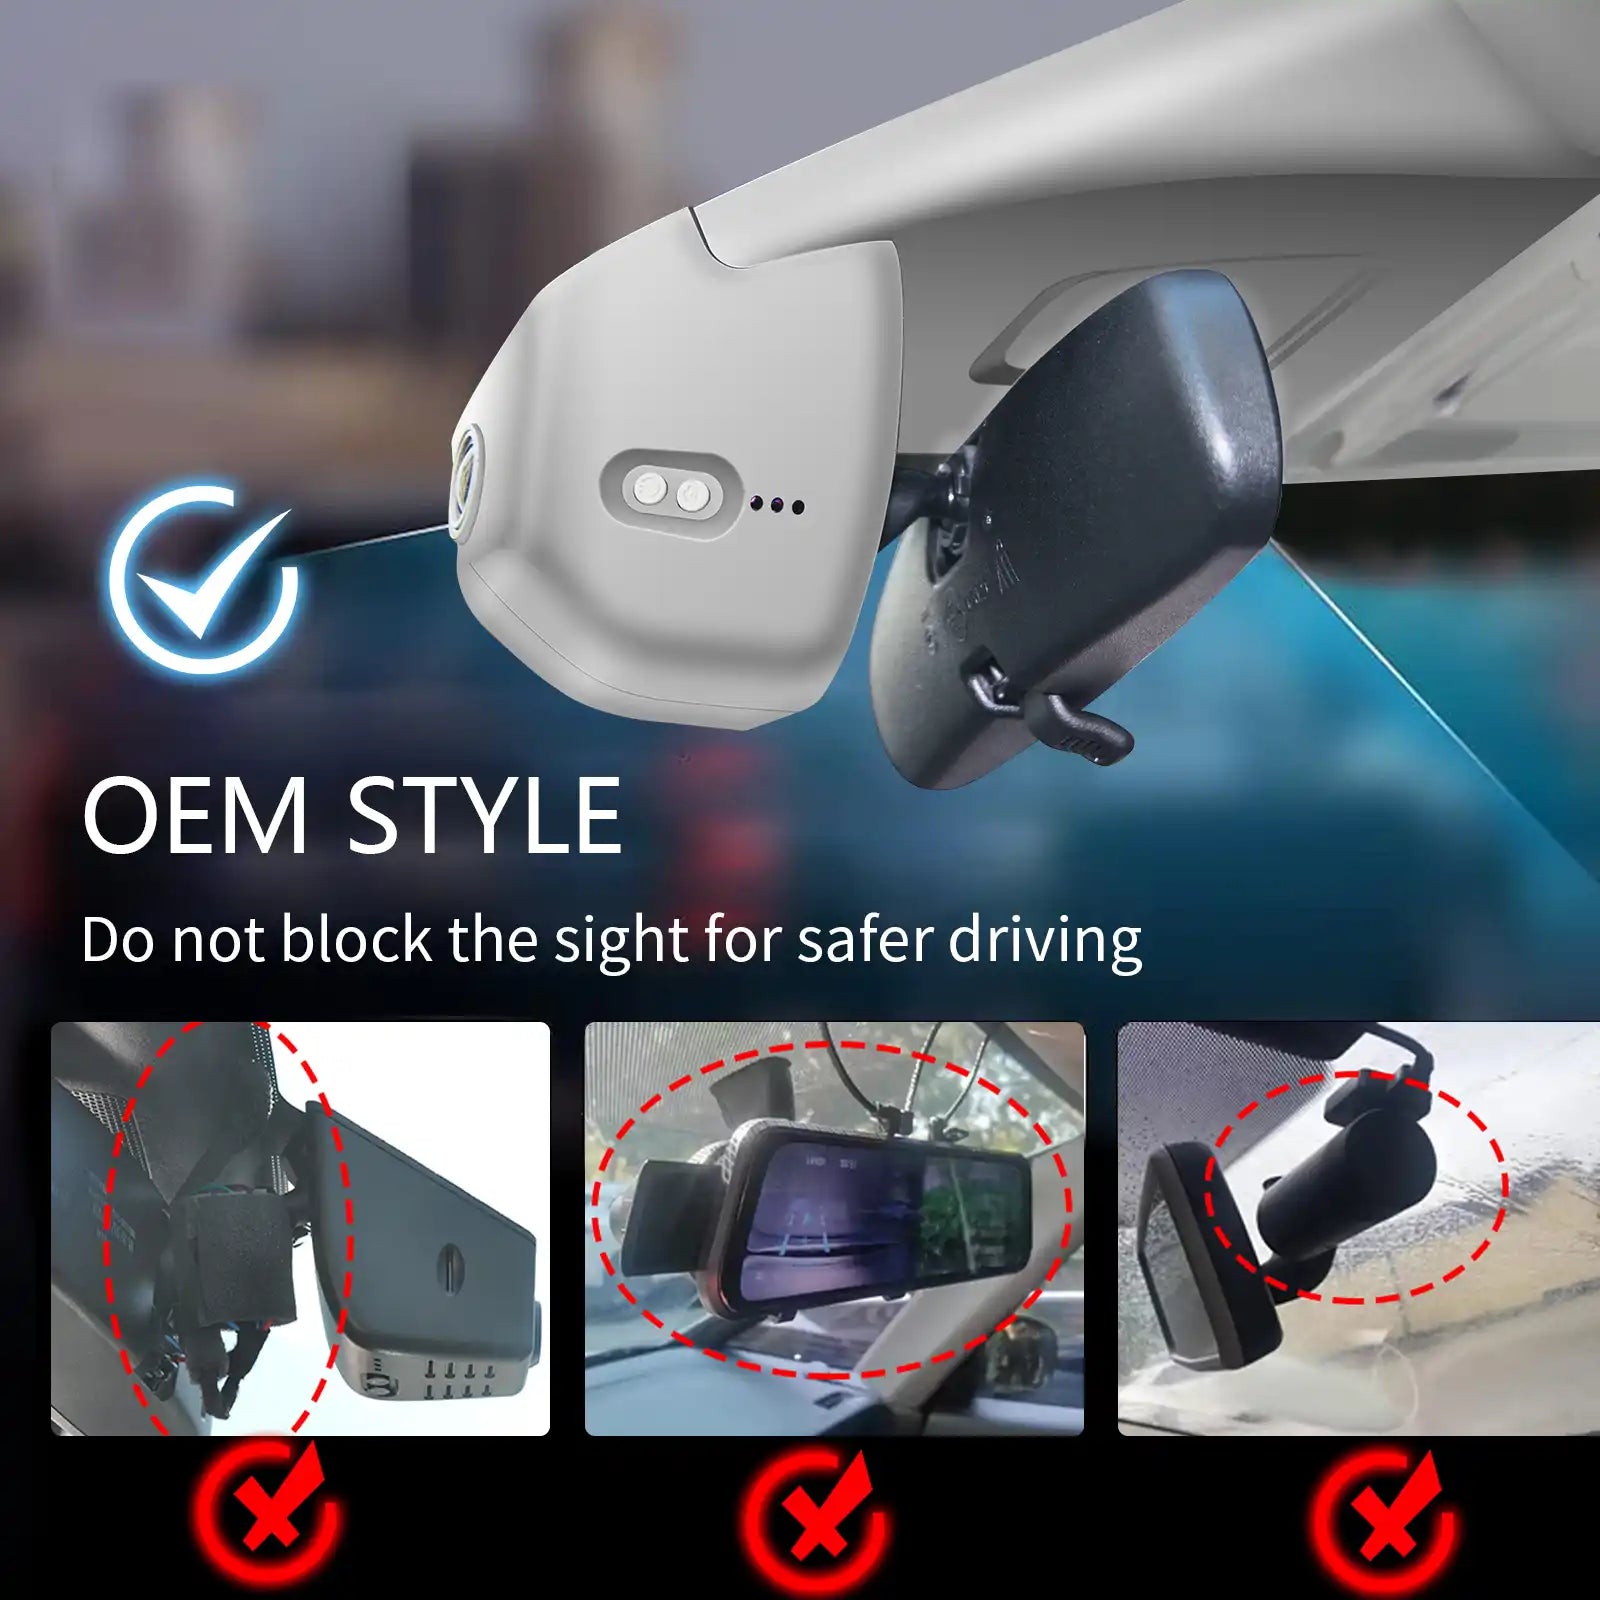 Honda Civic OEM style dash cam